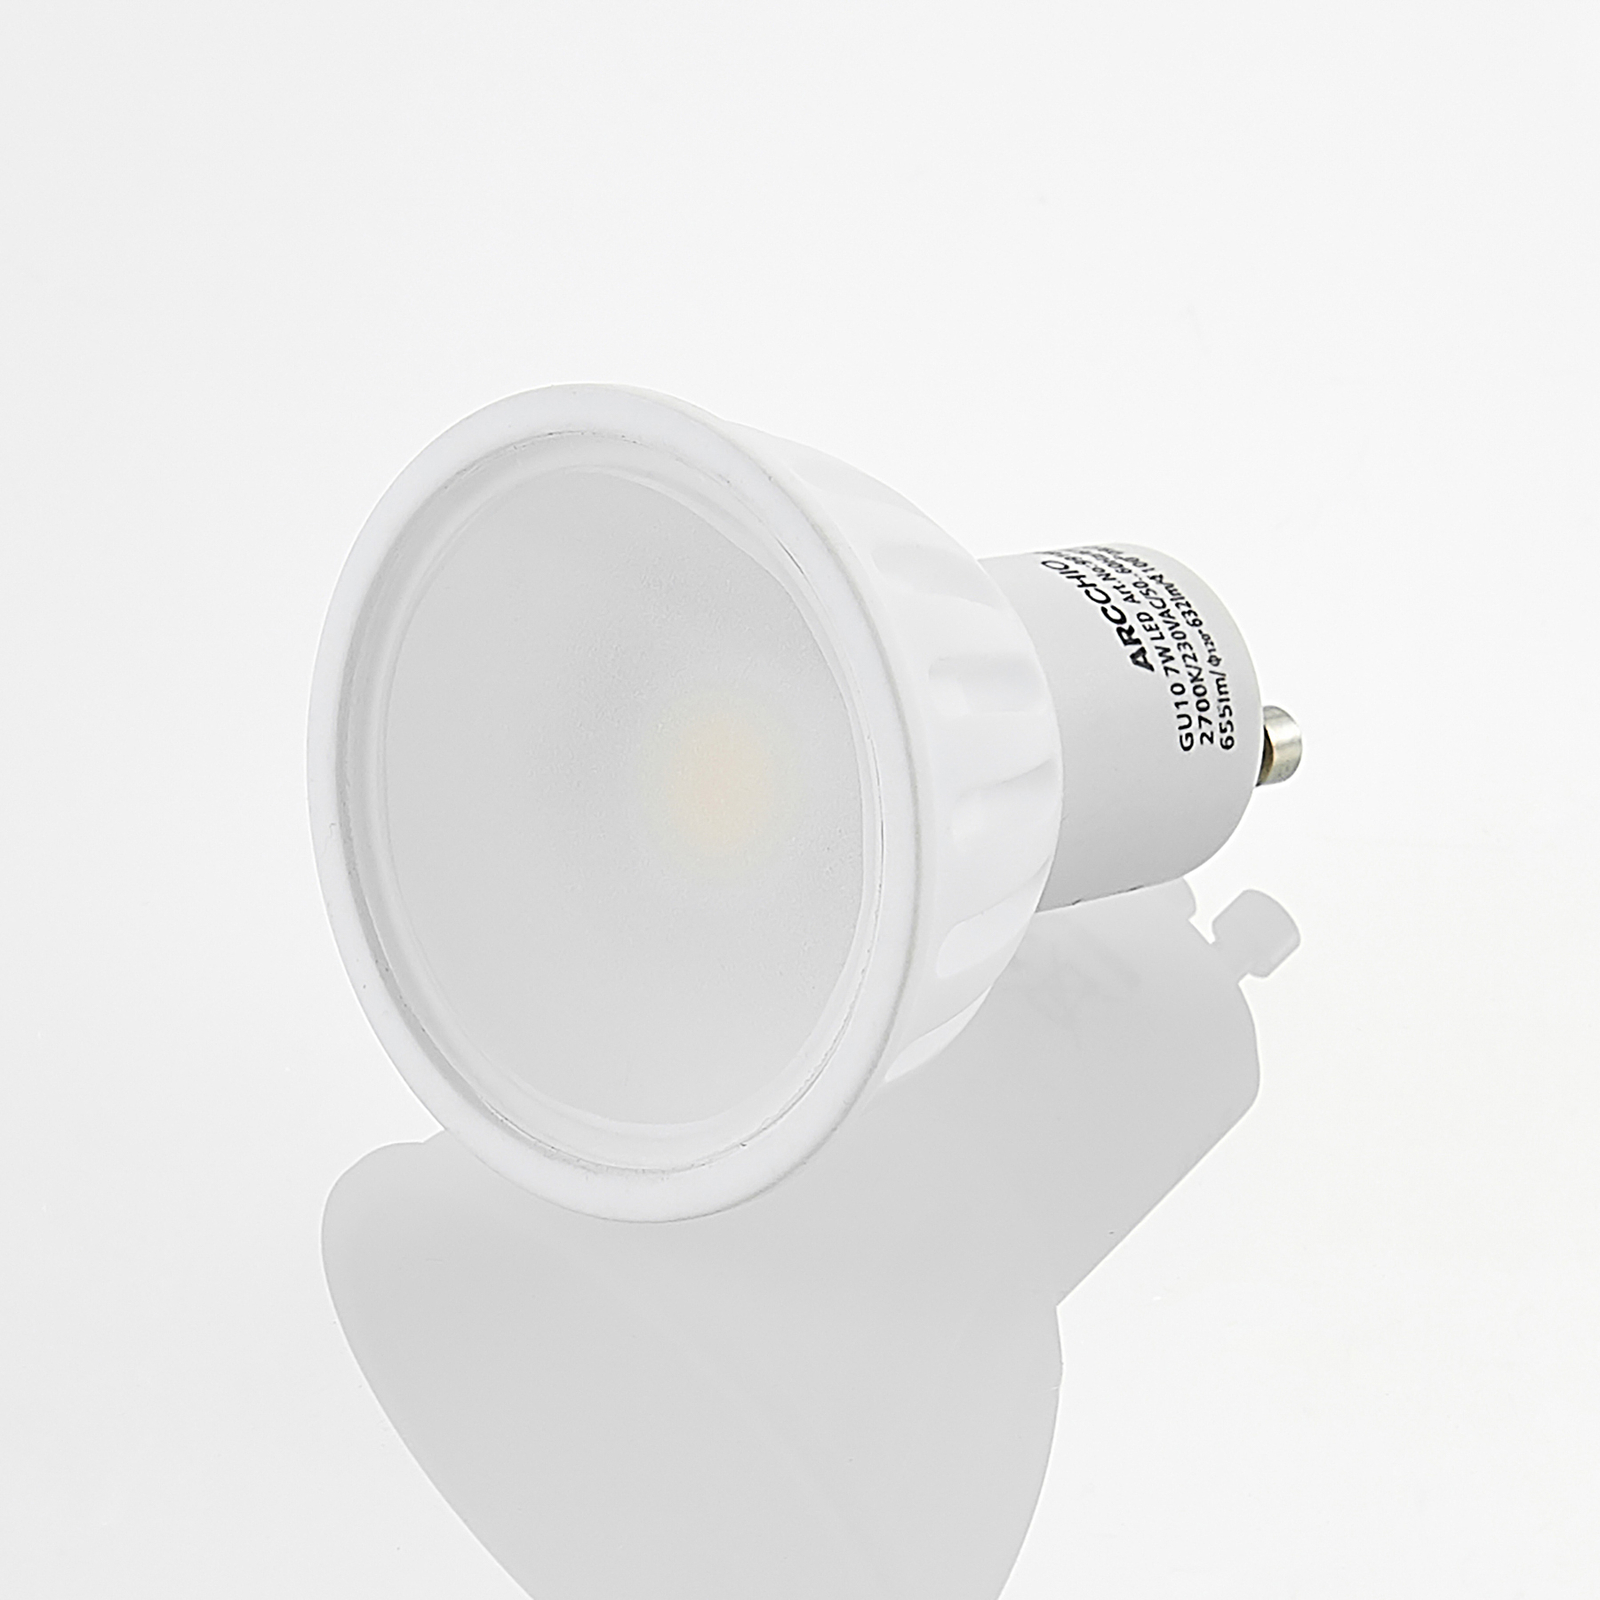 Arcchio LED-reflektor GU10 100° 5 W 3.000 K 3 stk